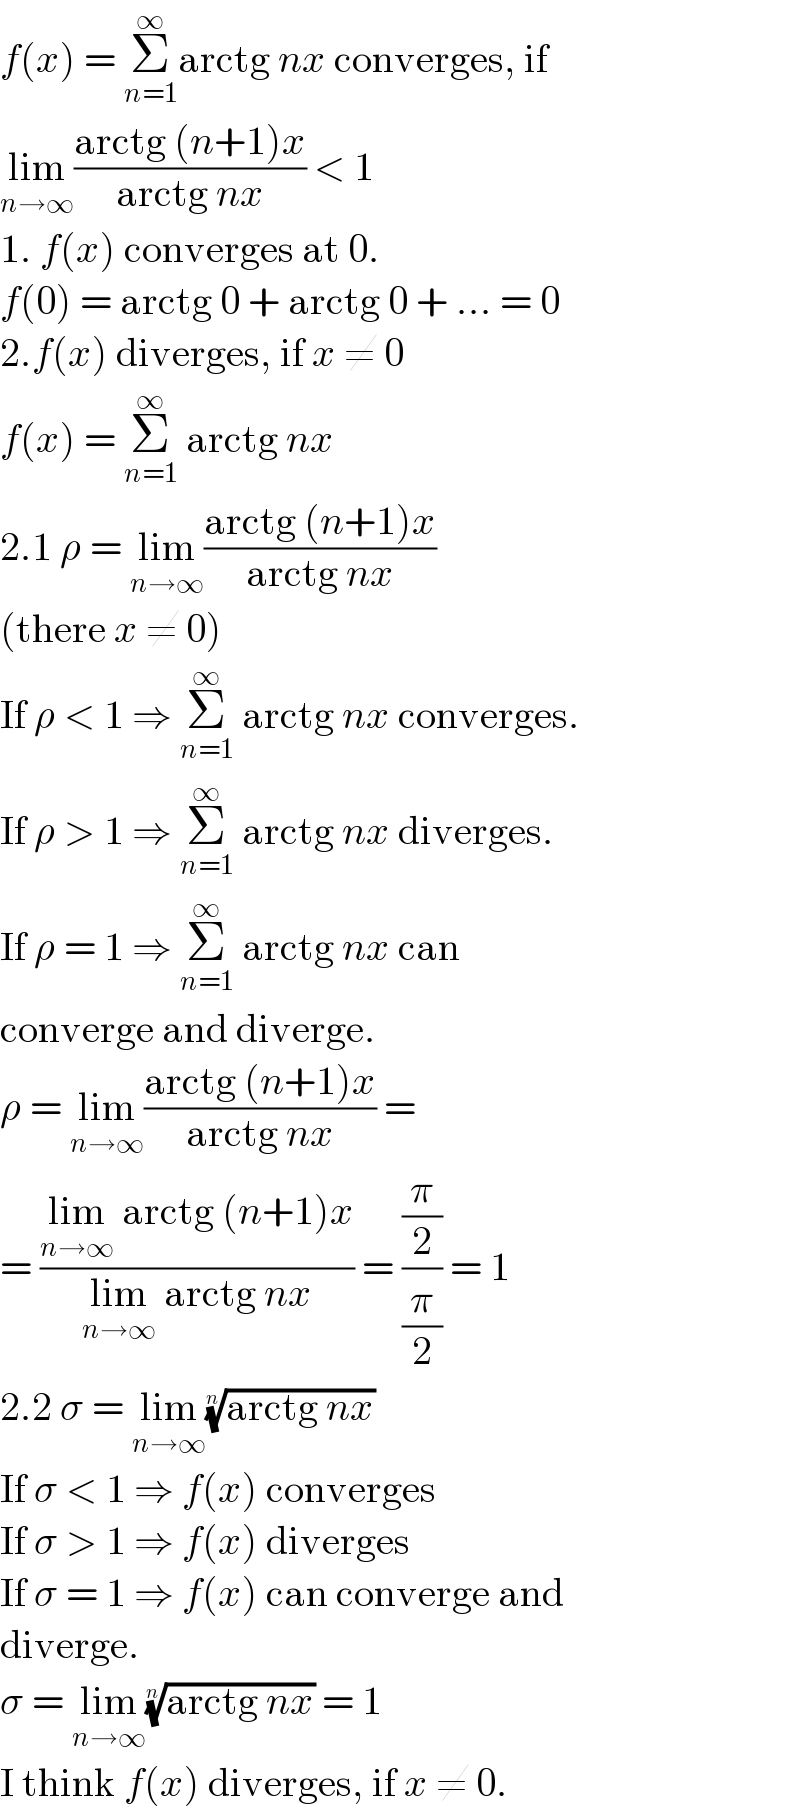 f(x) = Σ_(n=1) ^∞ arctg nx converges, if  lim_(n→∞) ((arctg (n+1)x)/(arctg nx)) < 1  1. f(x) converges at 0.  f(0) = arctg 0 + arctg 0 + ... = 0  2.f(x) diverges, if x ≠ 0  f(x) = Σ_(n=1) ^∞  arctg nx  2.1 ρ = lim_(n→∞) ((arctg (n+1)x)/(arctg nx))  (there x ≠ 0)  If ρ < 1 ⇒ Σ_(n=1) ^∞  arctg nx converges.  If ρ > 1 ⇒ Σ_(n=1) ^∞  arctg nx diverges.  If ρ = 1 ⇒ Σ_(n=1) ^∞  arctg nx can  converge and diverge.  ρ = lim_(n→∞) ((arctg (n+1)x)/(arctg nx)) =  = ((lim_(n→∞)  arctg (n+1)x)/(lim_(n→∞)  arctg nx)) = ((π/2)/(π/2)) = 1  2.2 σ = lim_(n→∞) ((arctg nx))^(1/n)   If σ < 1 ⇒ f(x) converges  If σ > 1 ⇒ f(x) diverges  If σ = 1 ⇒ f(x) can converge and  diverge.  σ = lim_(n→∞) ((arctg nx))^(1/n)  = 1  I think f(x) diverges, if x ≠ 0.  